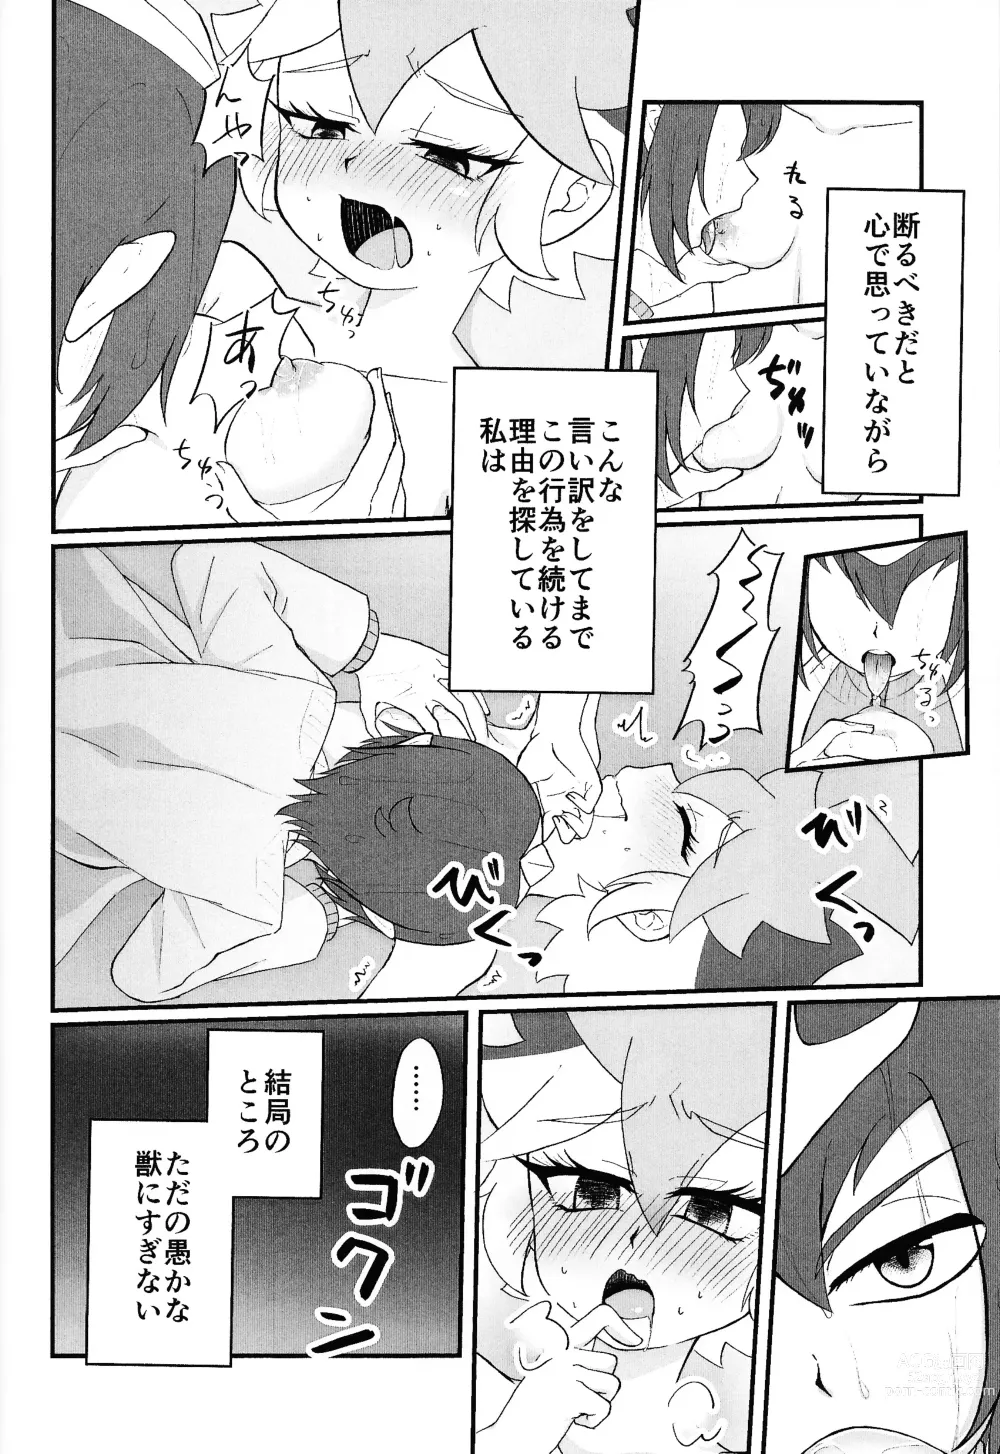 Page 25 of doujinshi Pandoranohako ka kindan no kajitsu ka